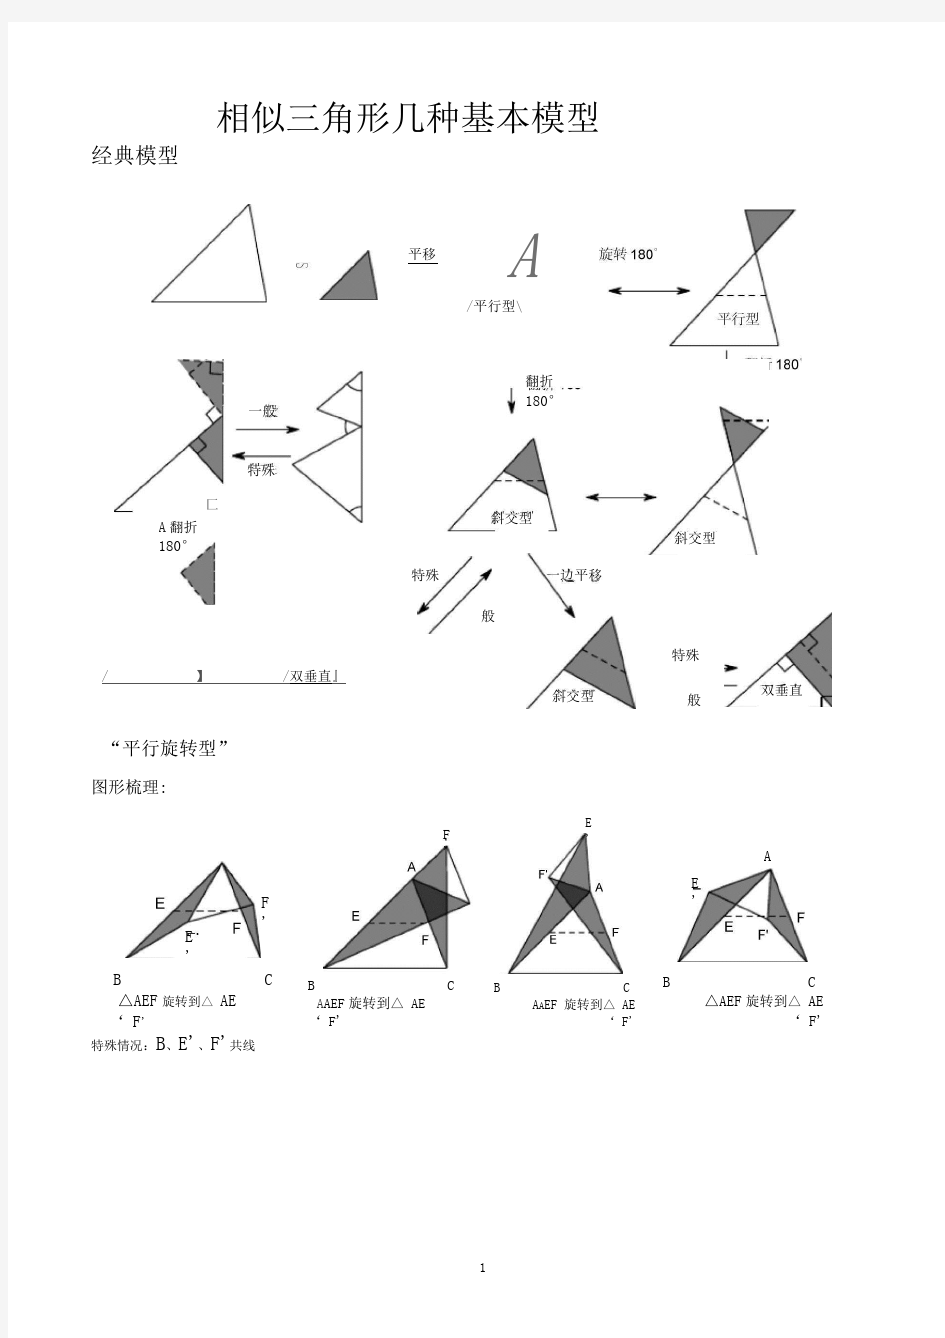 完整版相似三角形几种基本模型